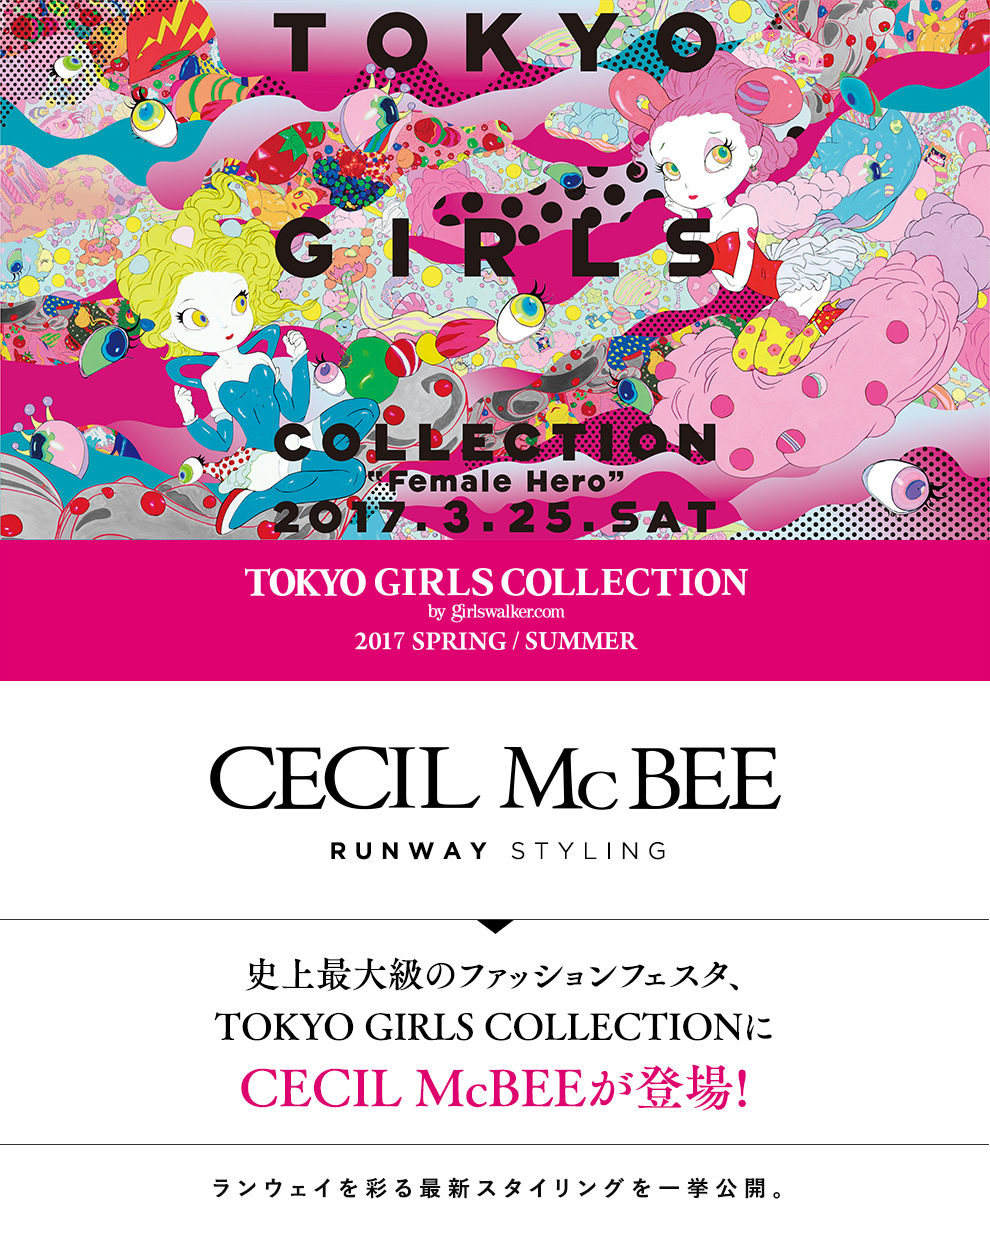 史上最大級のファッションフェスタ、TOKYO GIRLS COLLECTIONにCECIL McBEEが登場!